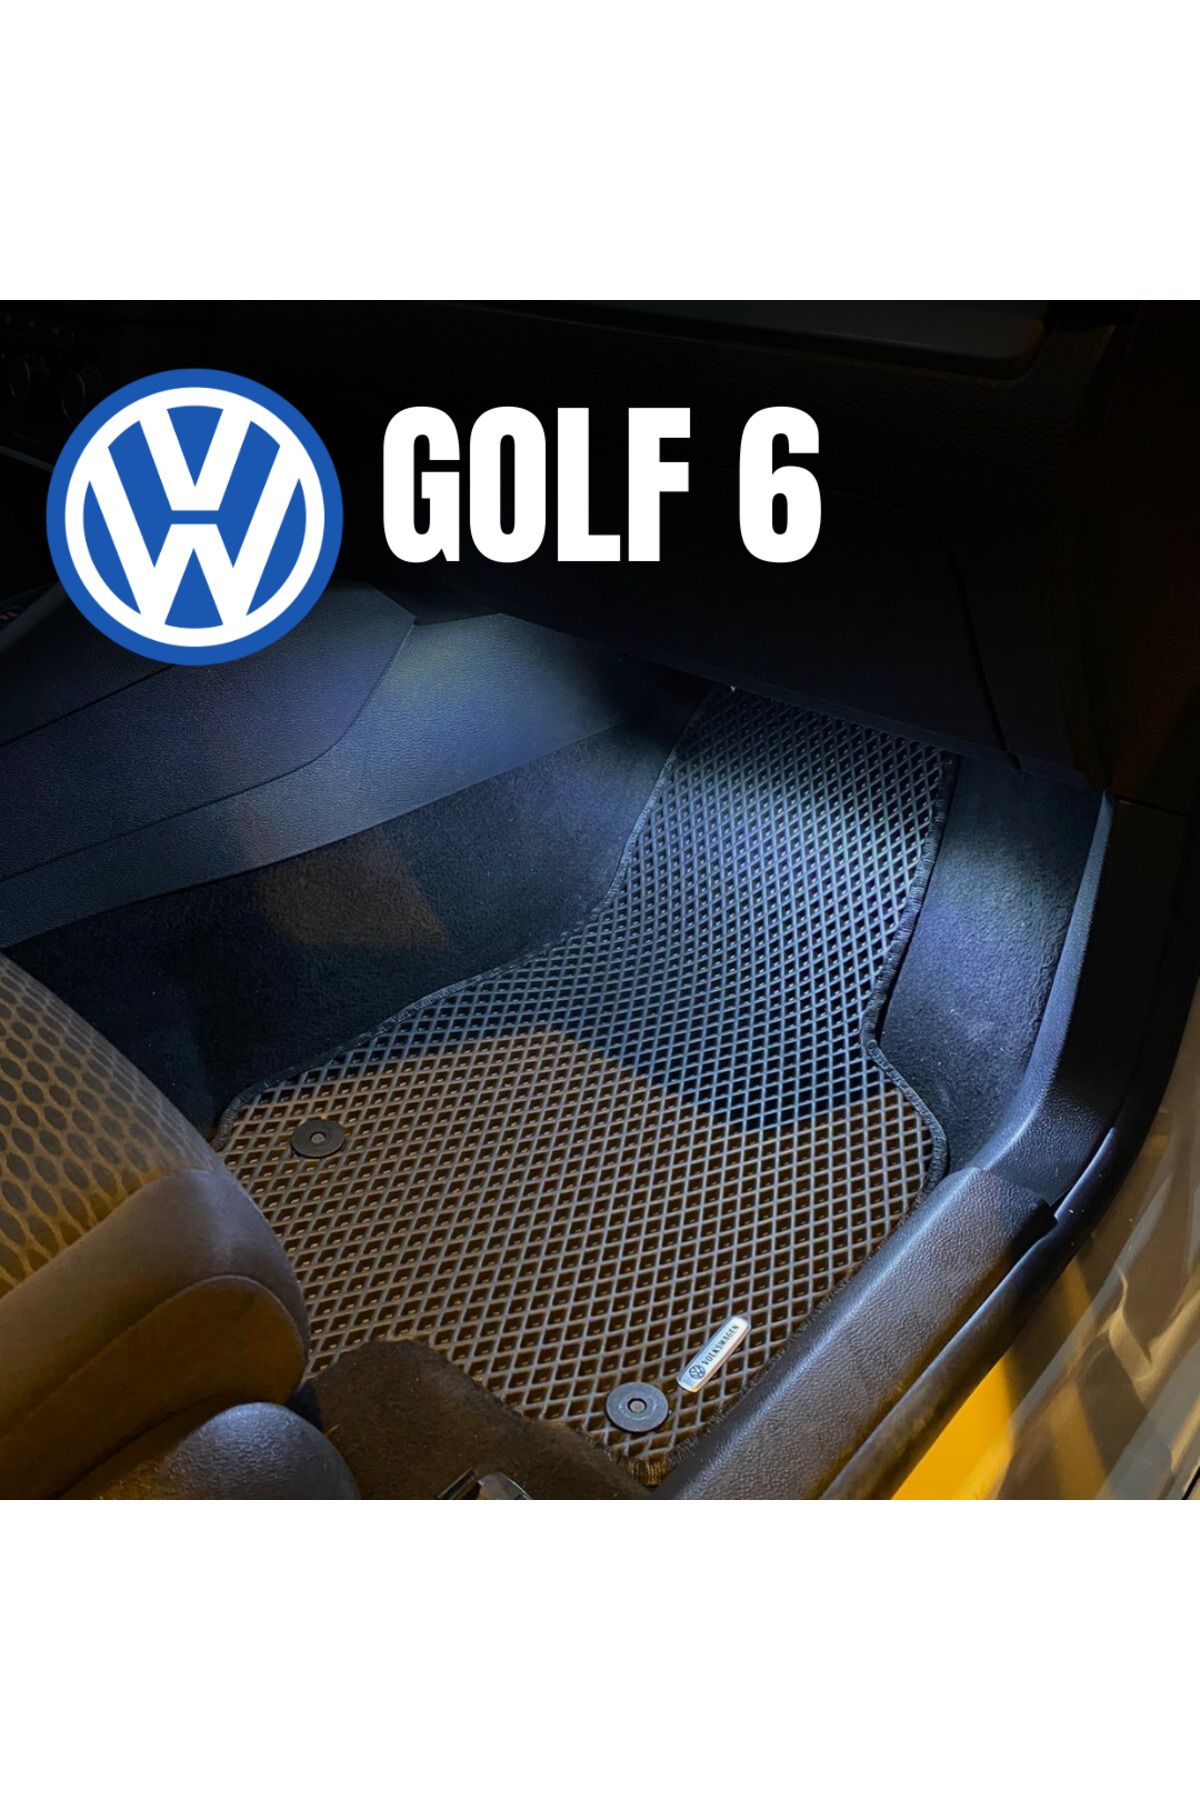 pascar Volkswagen Golf 6 (2009-2013) araca özel yeni nesil akıllı oto paspas (SİYAH)